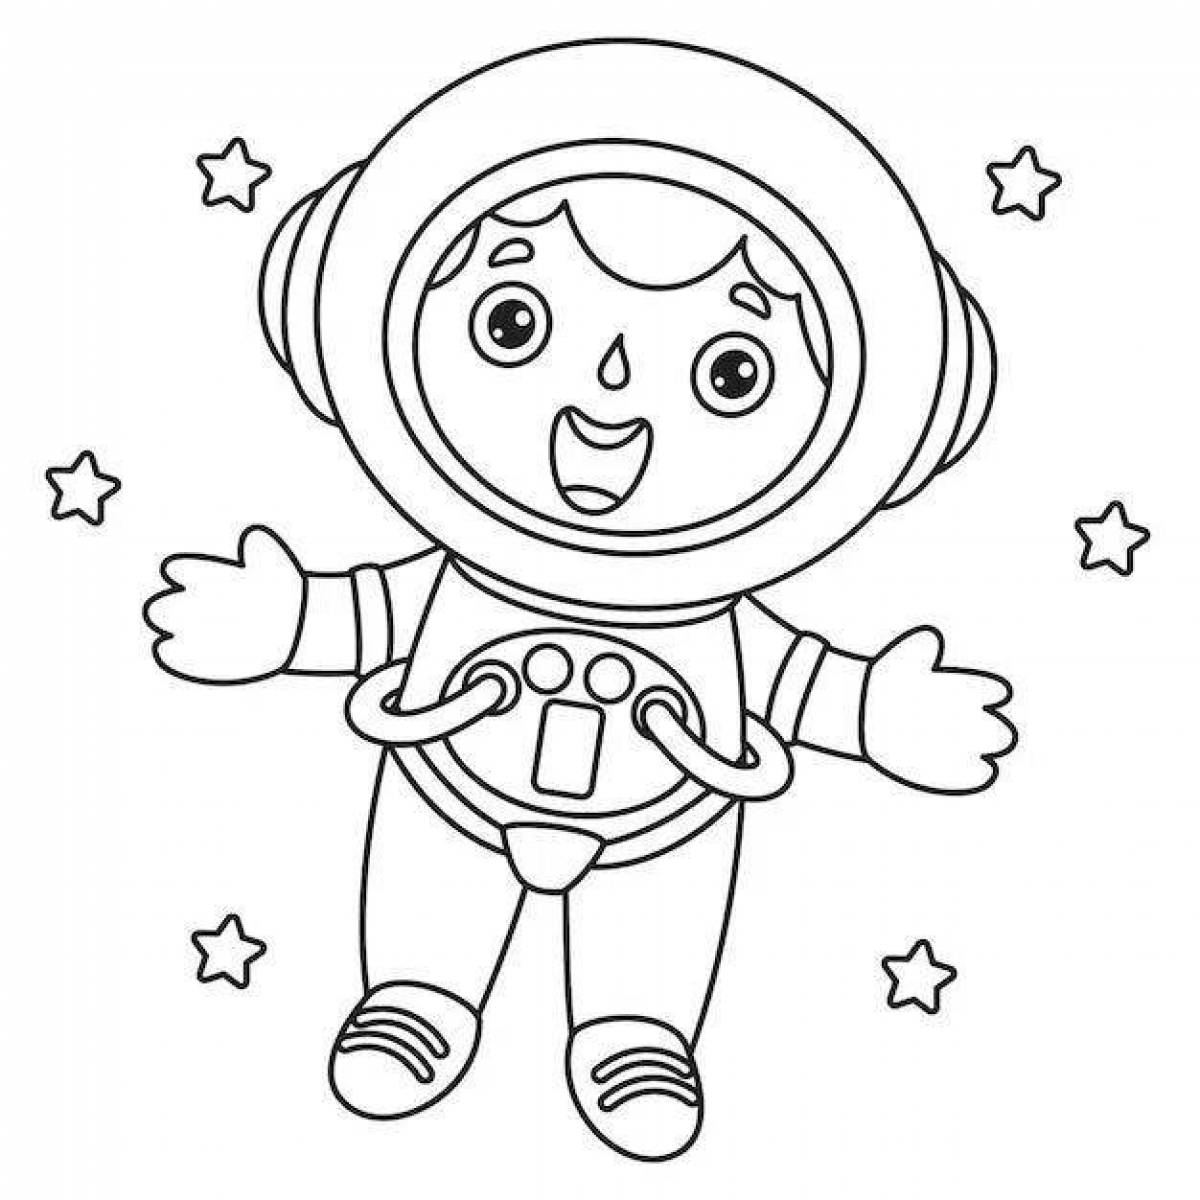 Веселая раскраска космонавта для детей